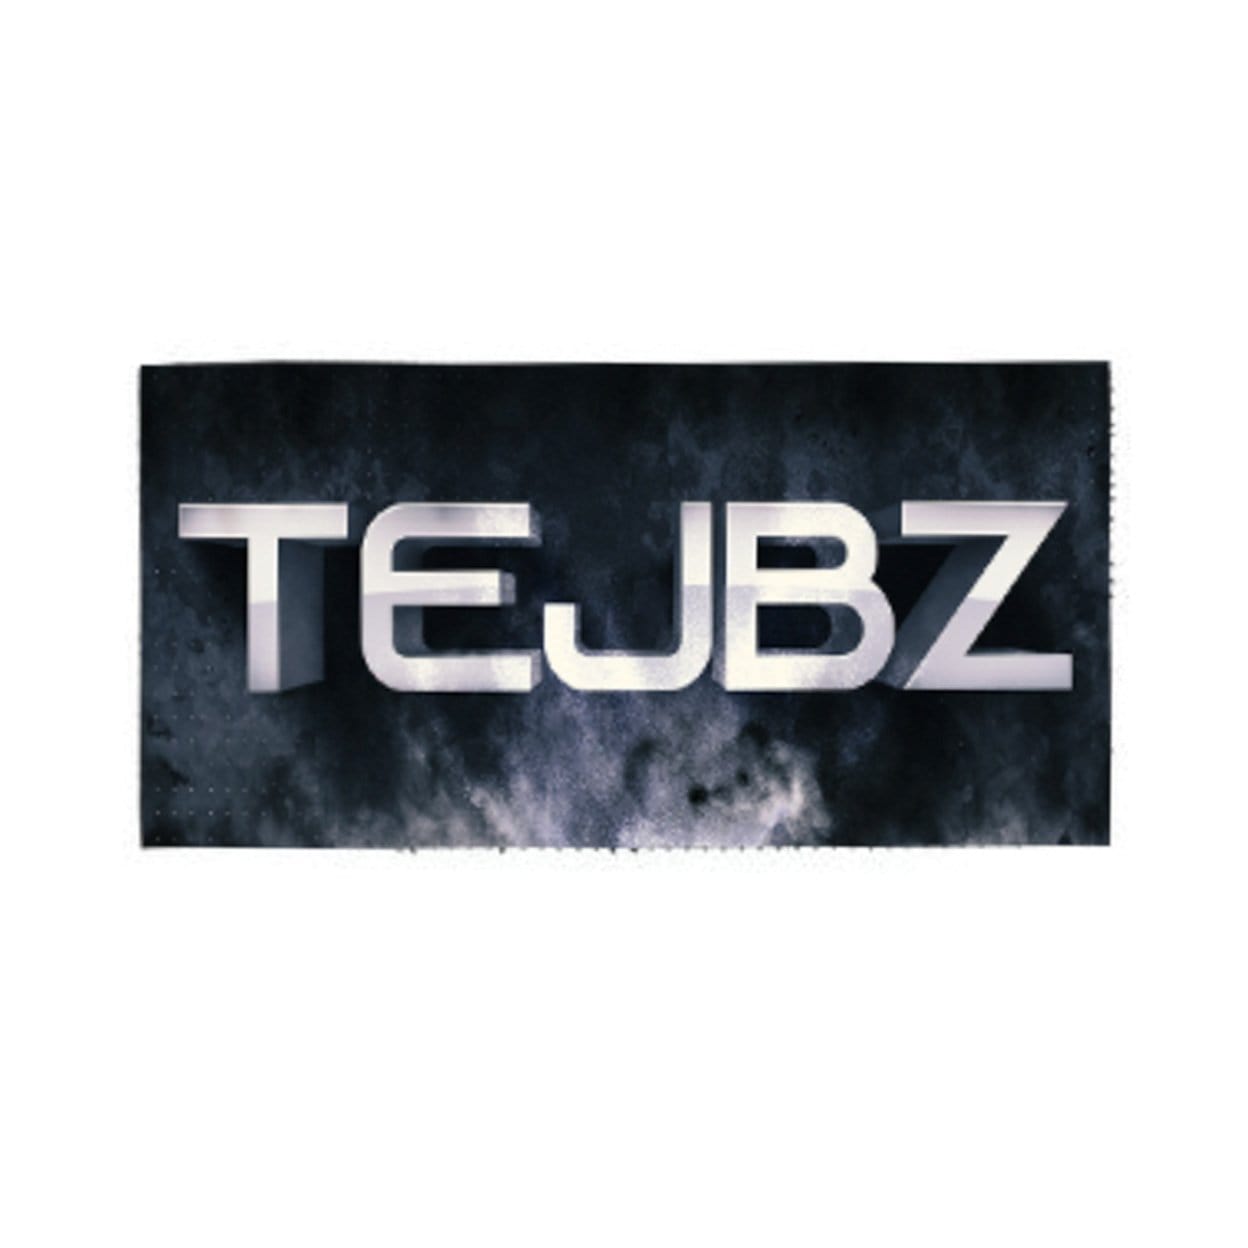 TEJBZ Logo Patch